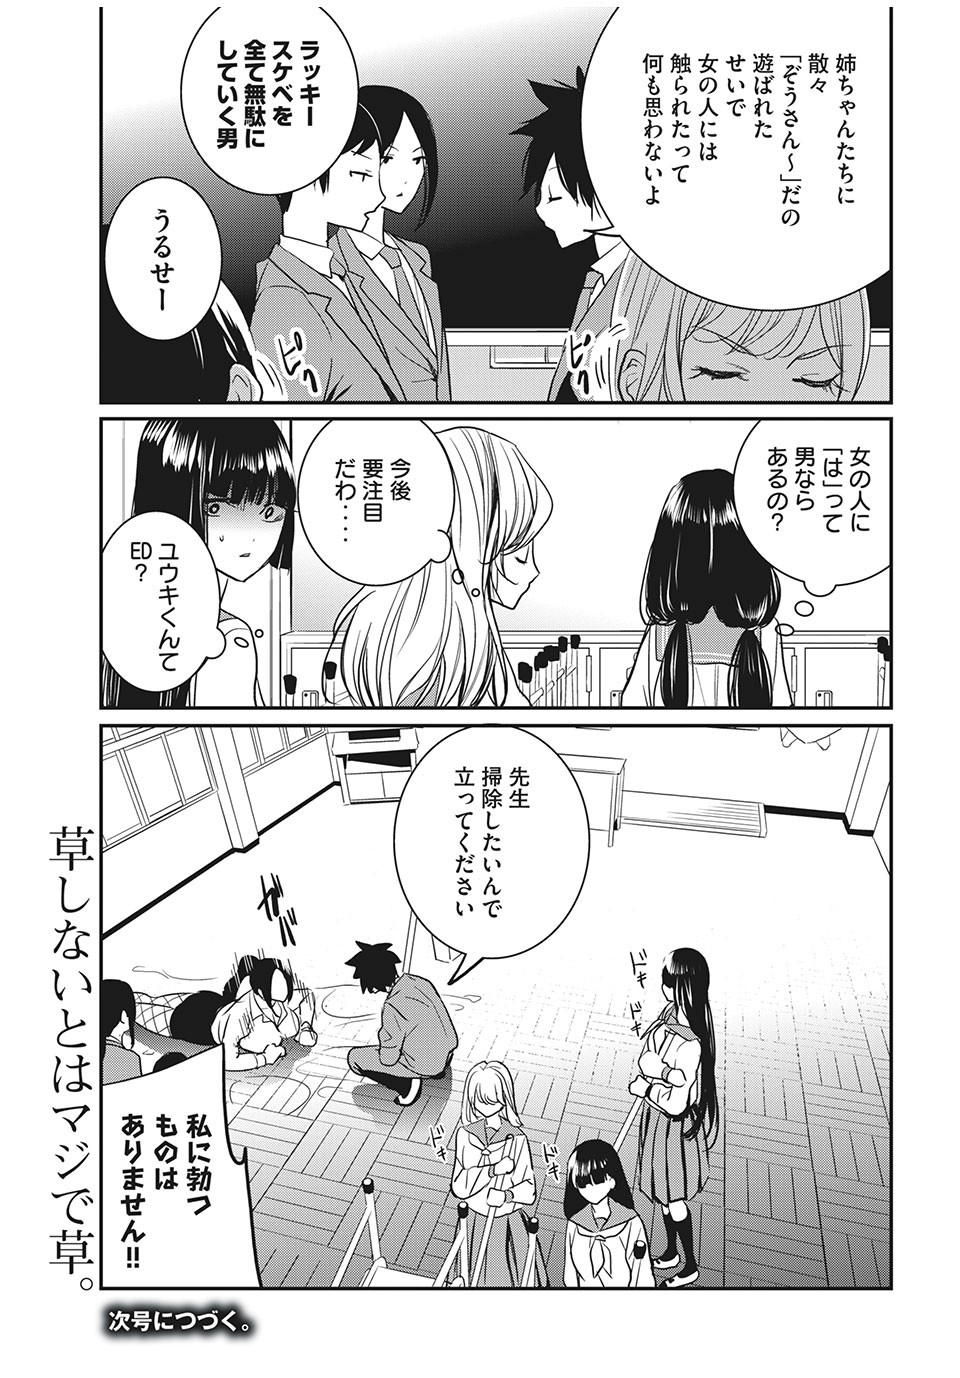 Eigo ×× Sensei - Chapter 17 - Page 15